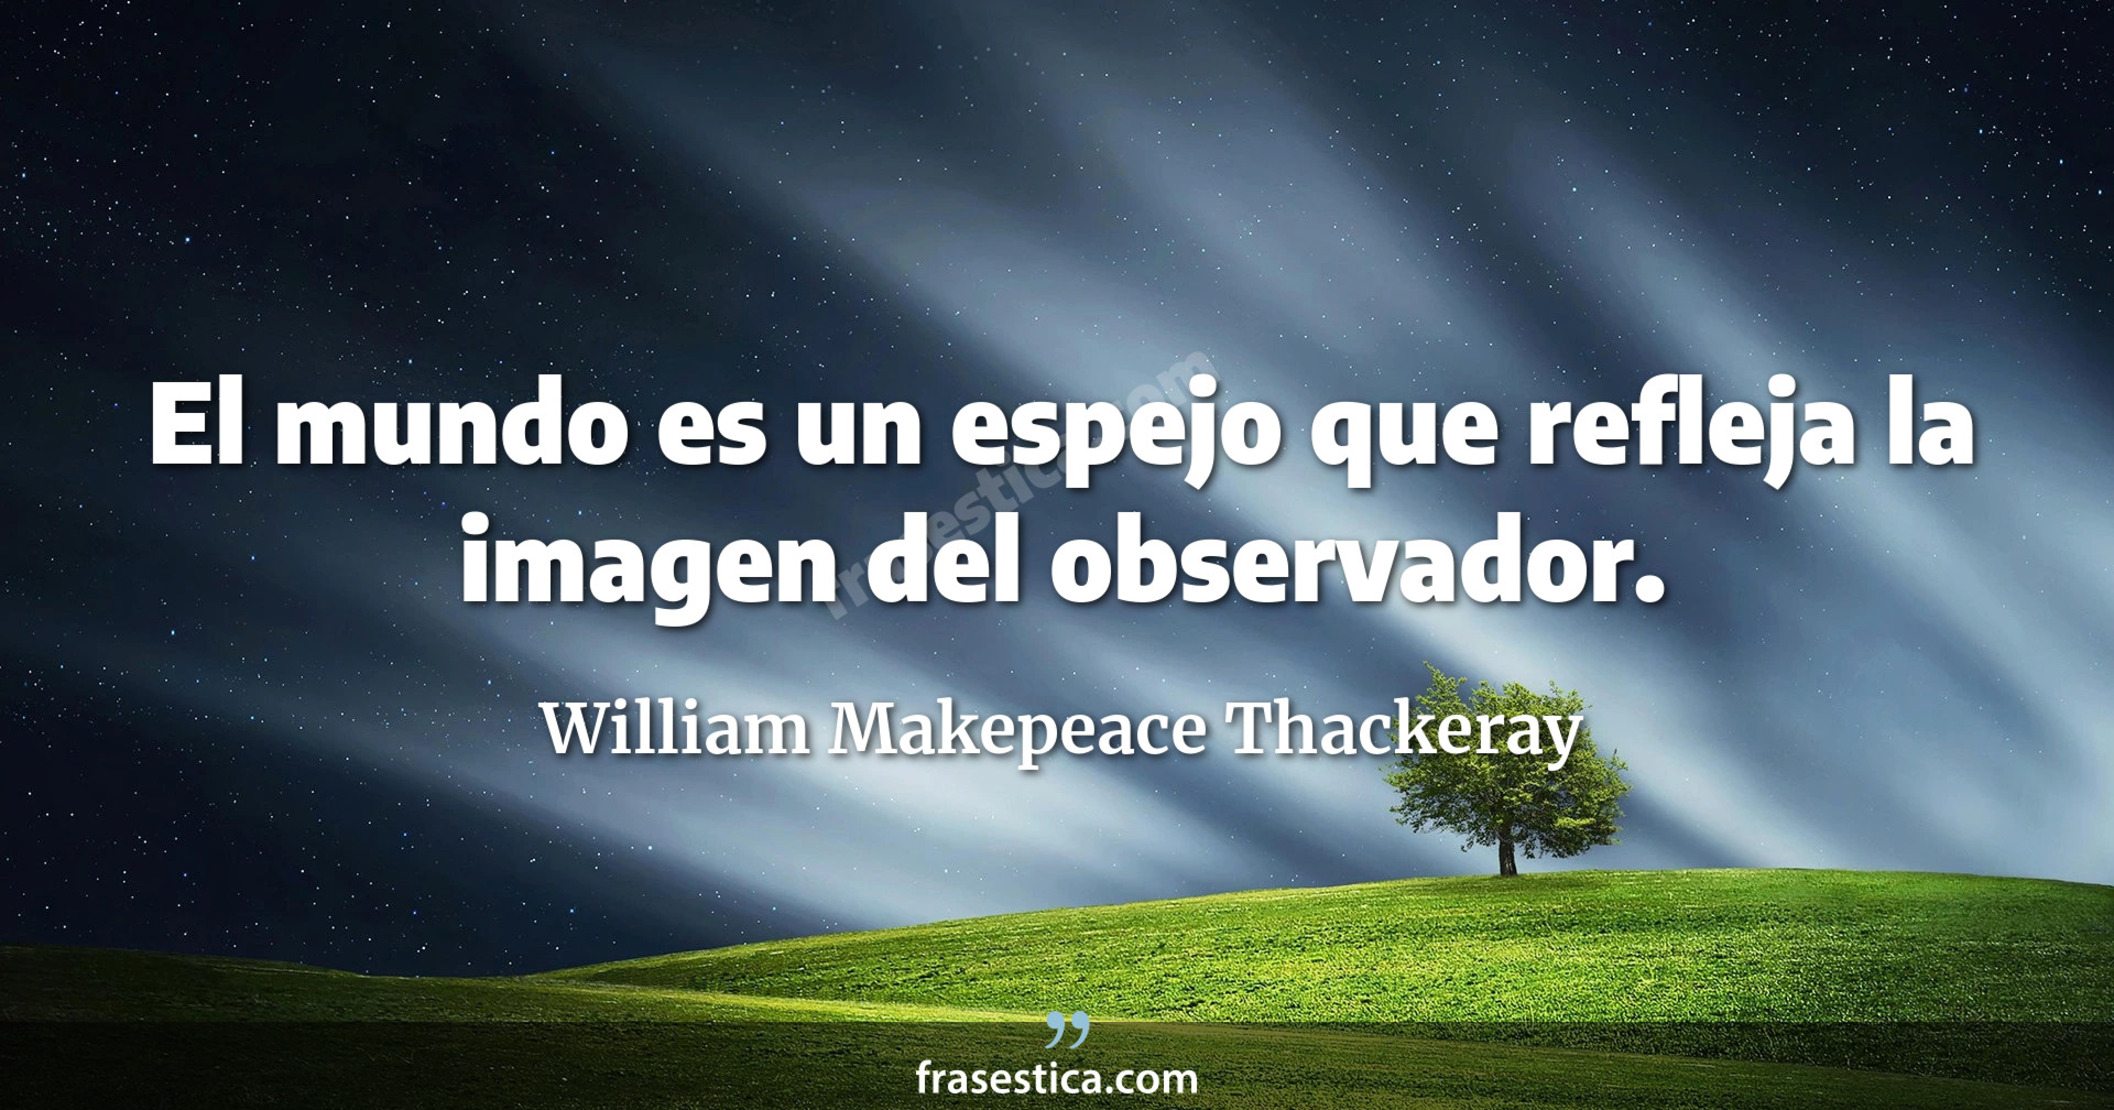 El mundo es un espejo que refleja la imagen del observador. - William Makepeace Thackeray